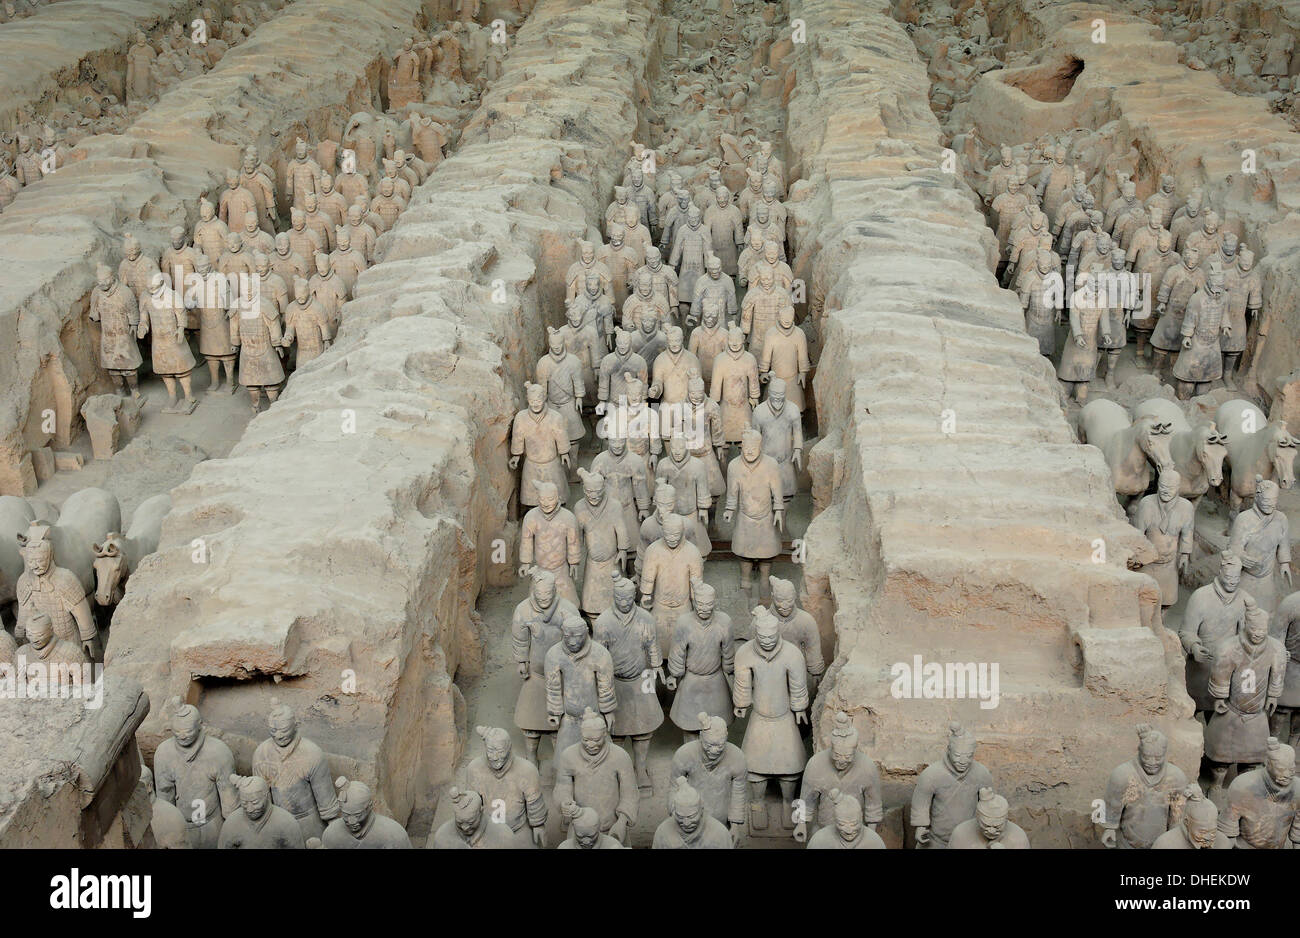 Esercito di Terracotta, custodito il primo imperatore della Cina Qin Shi Huangdi's Tomb, Xian, Lintong, Shaanxi, Cina, Asia Foto Stock